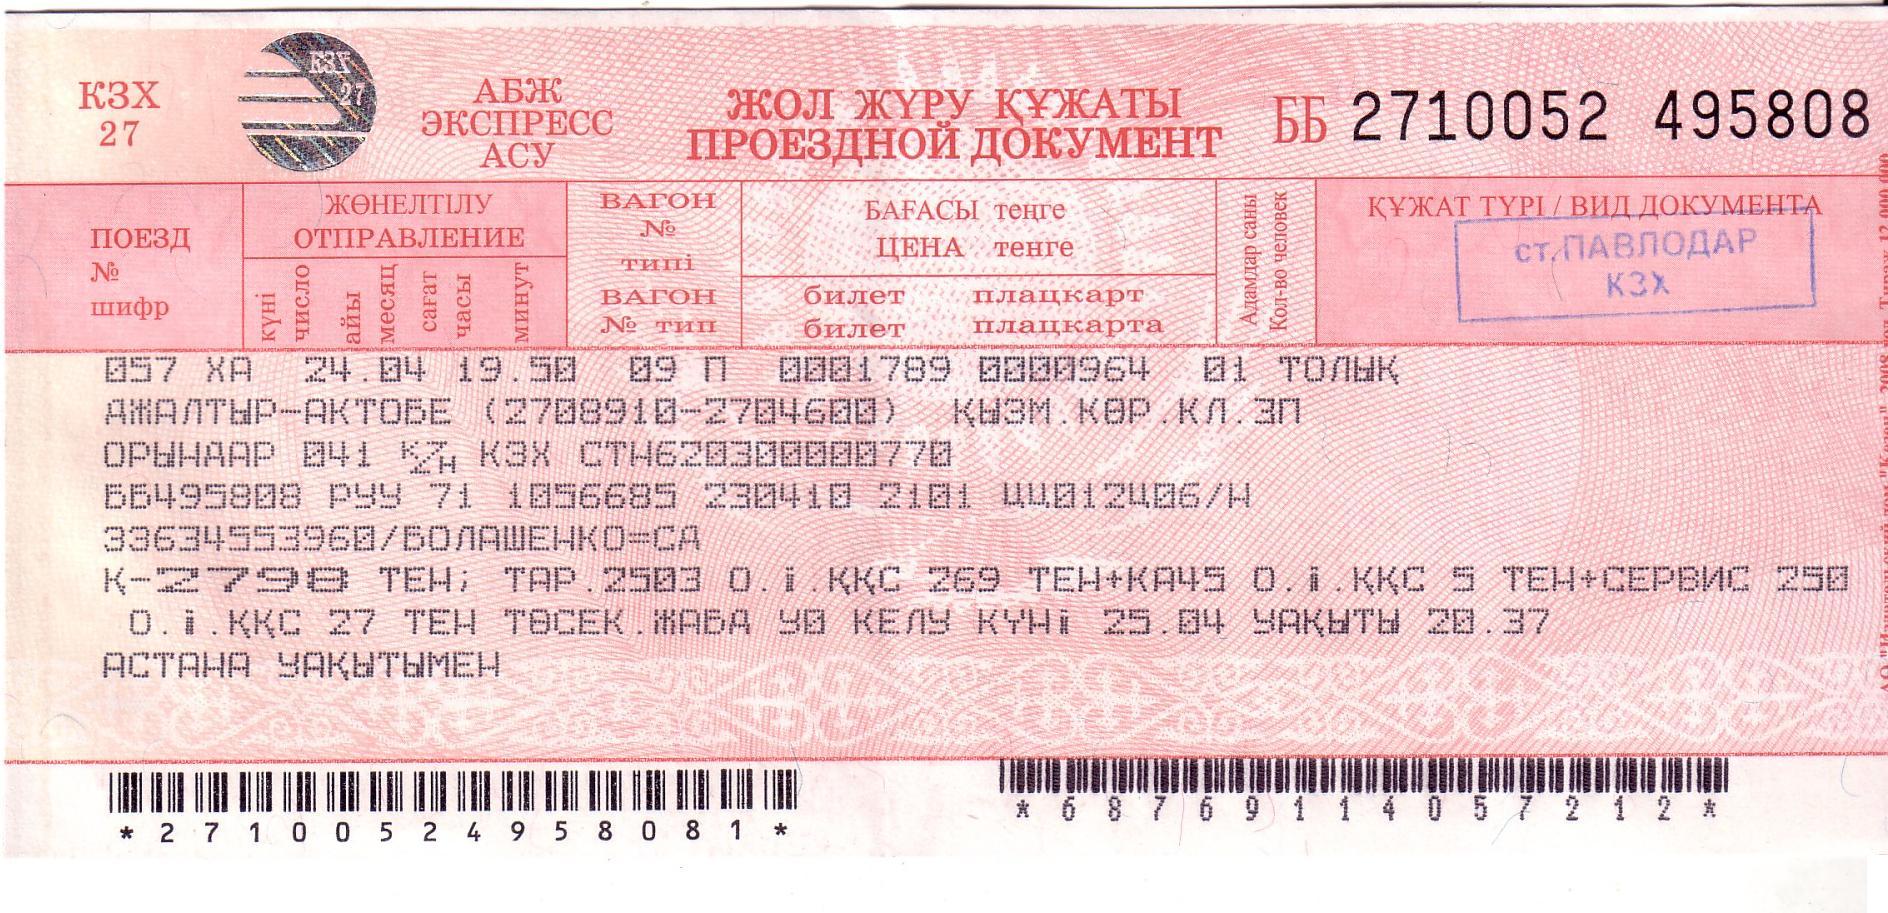 Купить жд билет ктж. ЖД билеты. Билет на поезд Казахстан. ЖД билеты Казахстан. ЖД билет картинка.